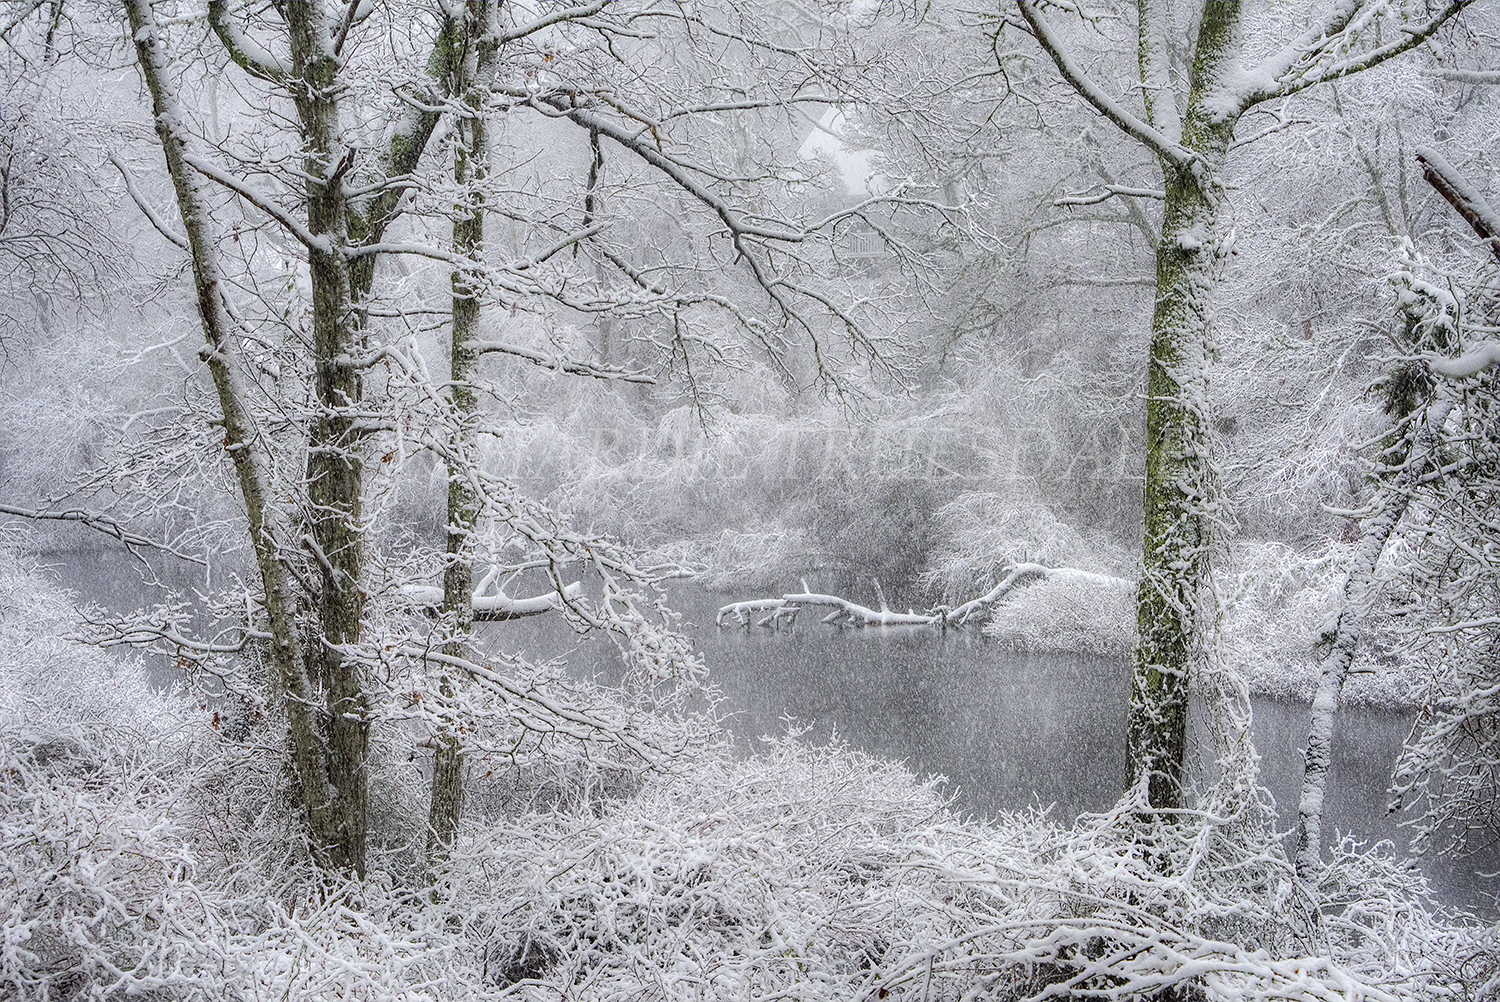 CC#157 "Blizzard, Reuben's Pond"